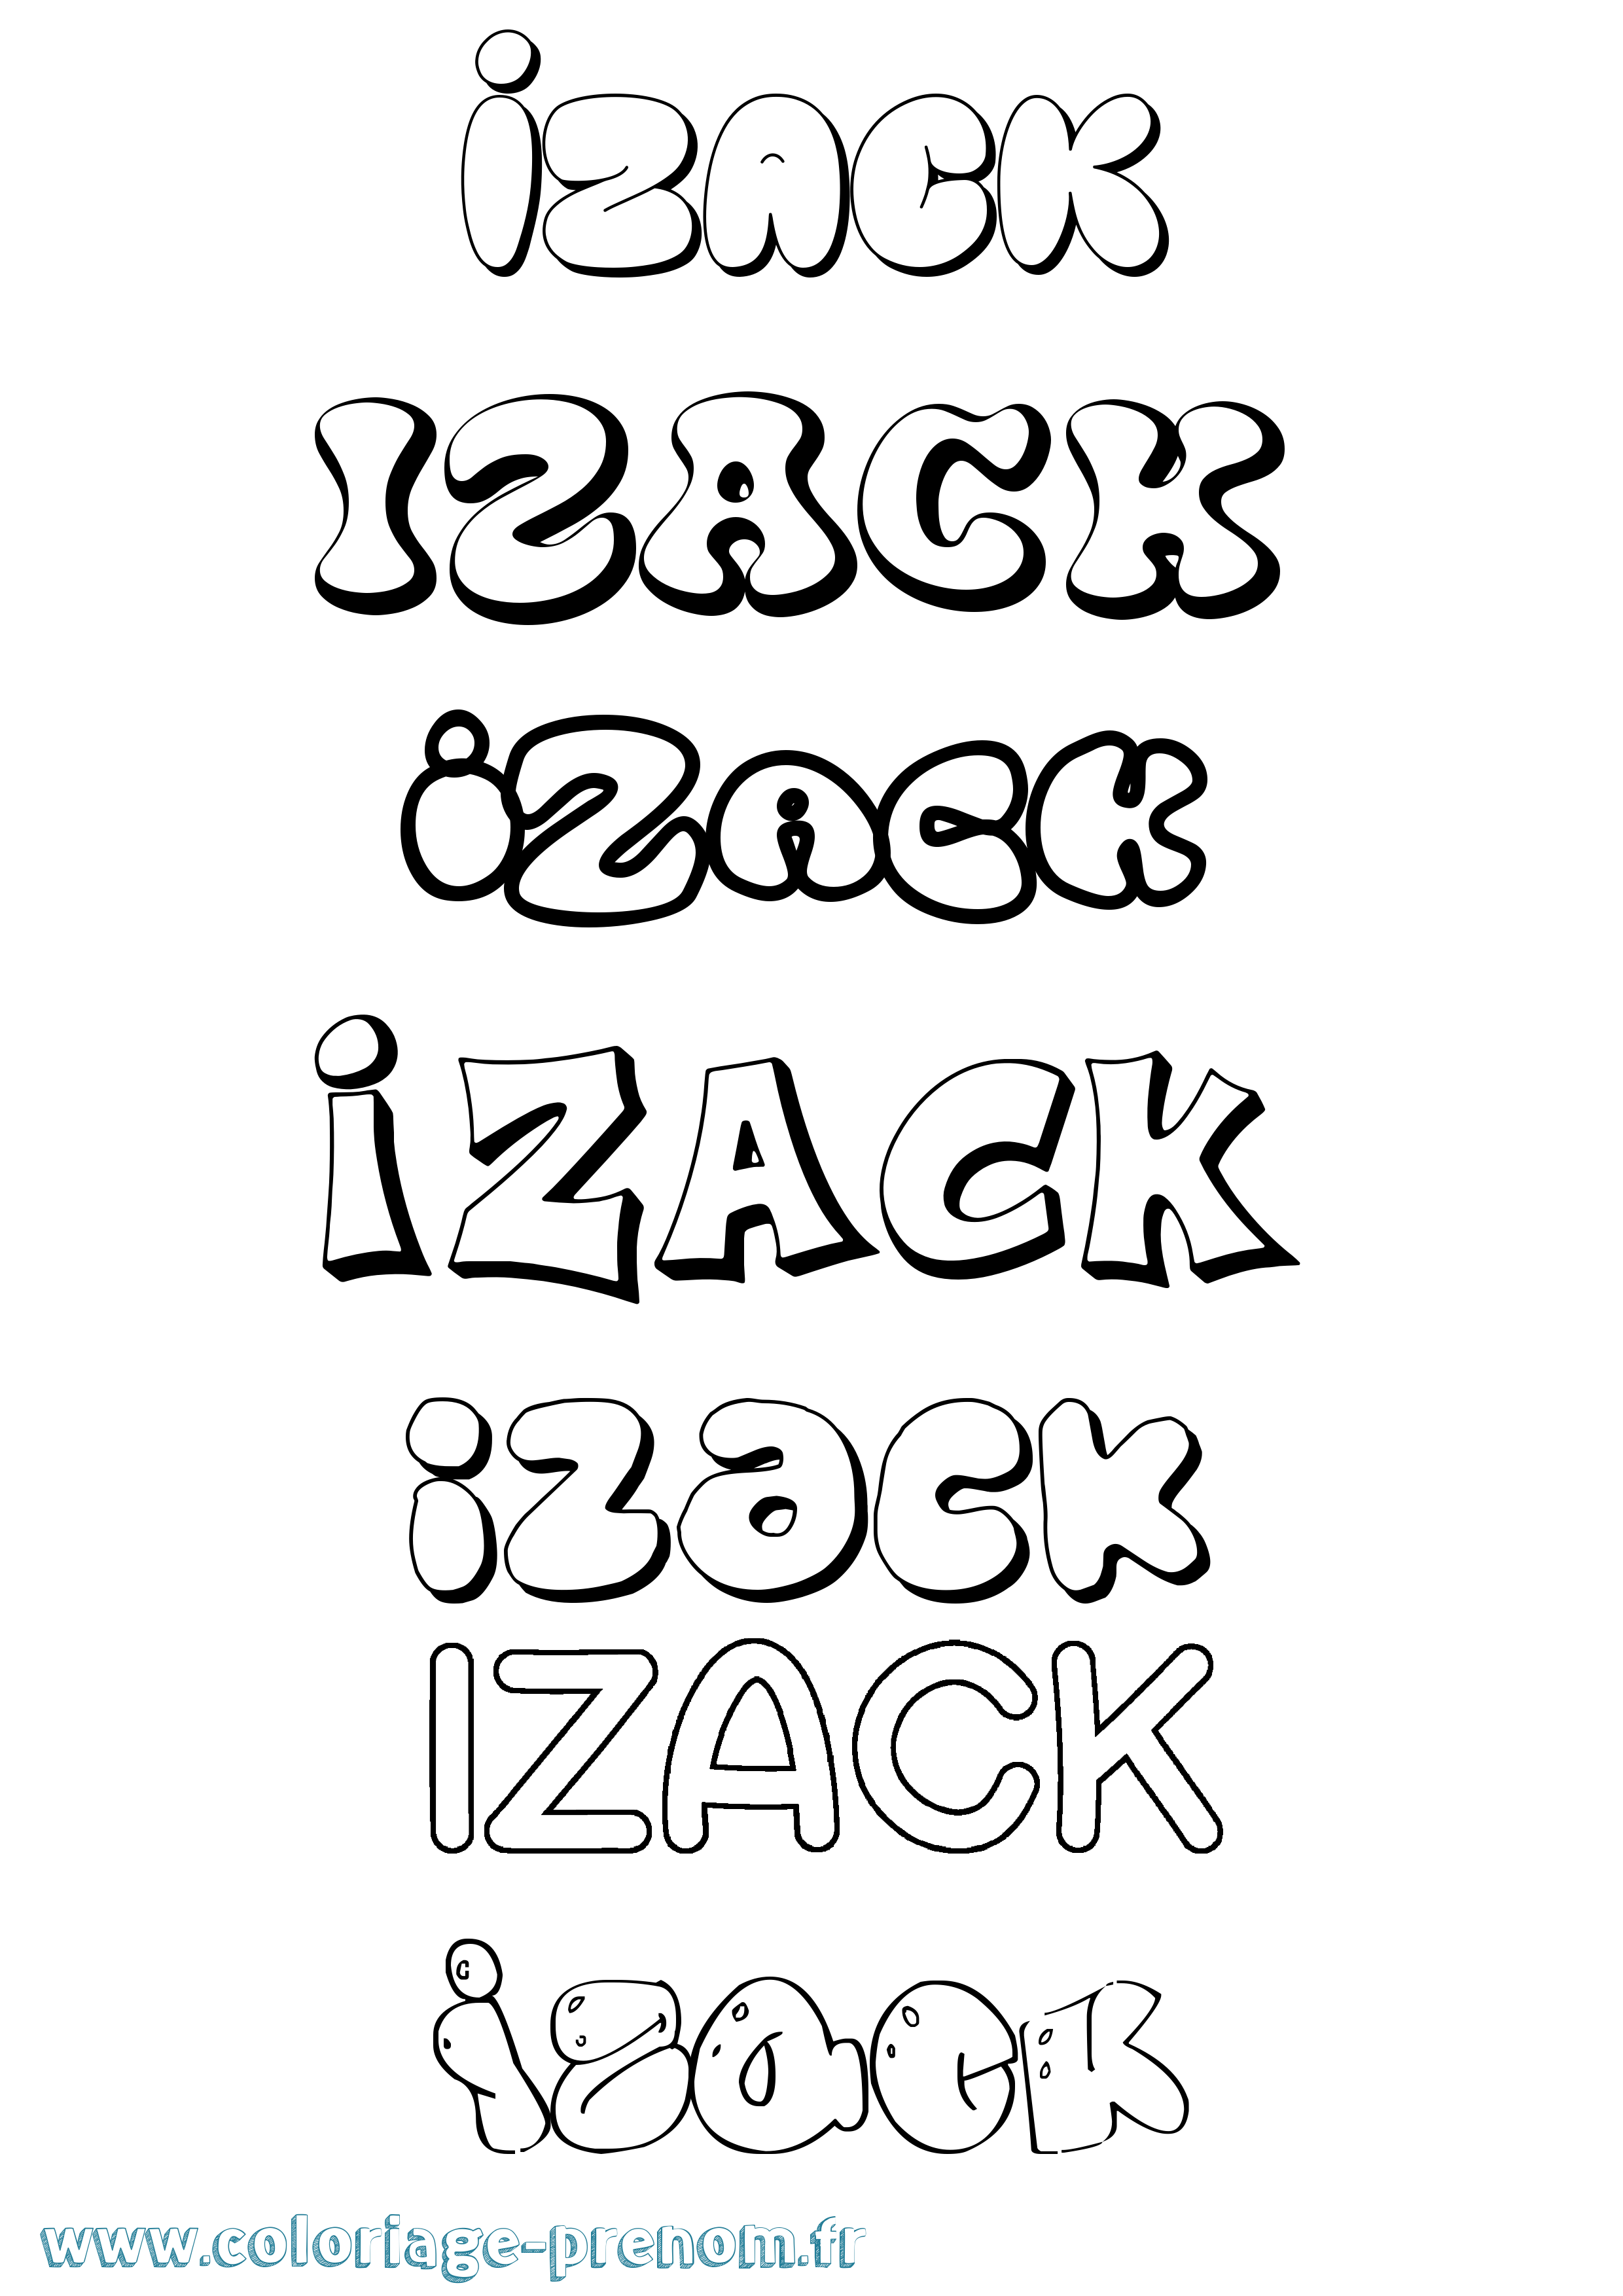 Coloriage prénom Izack Bubble